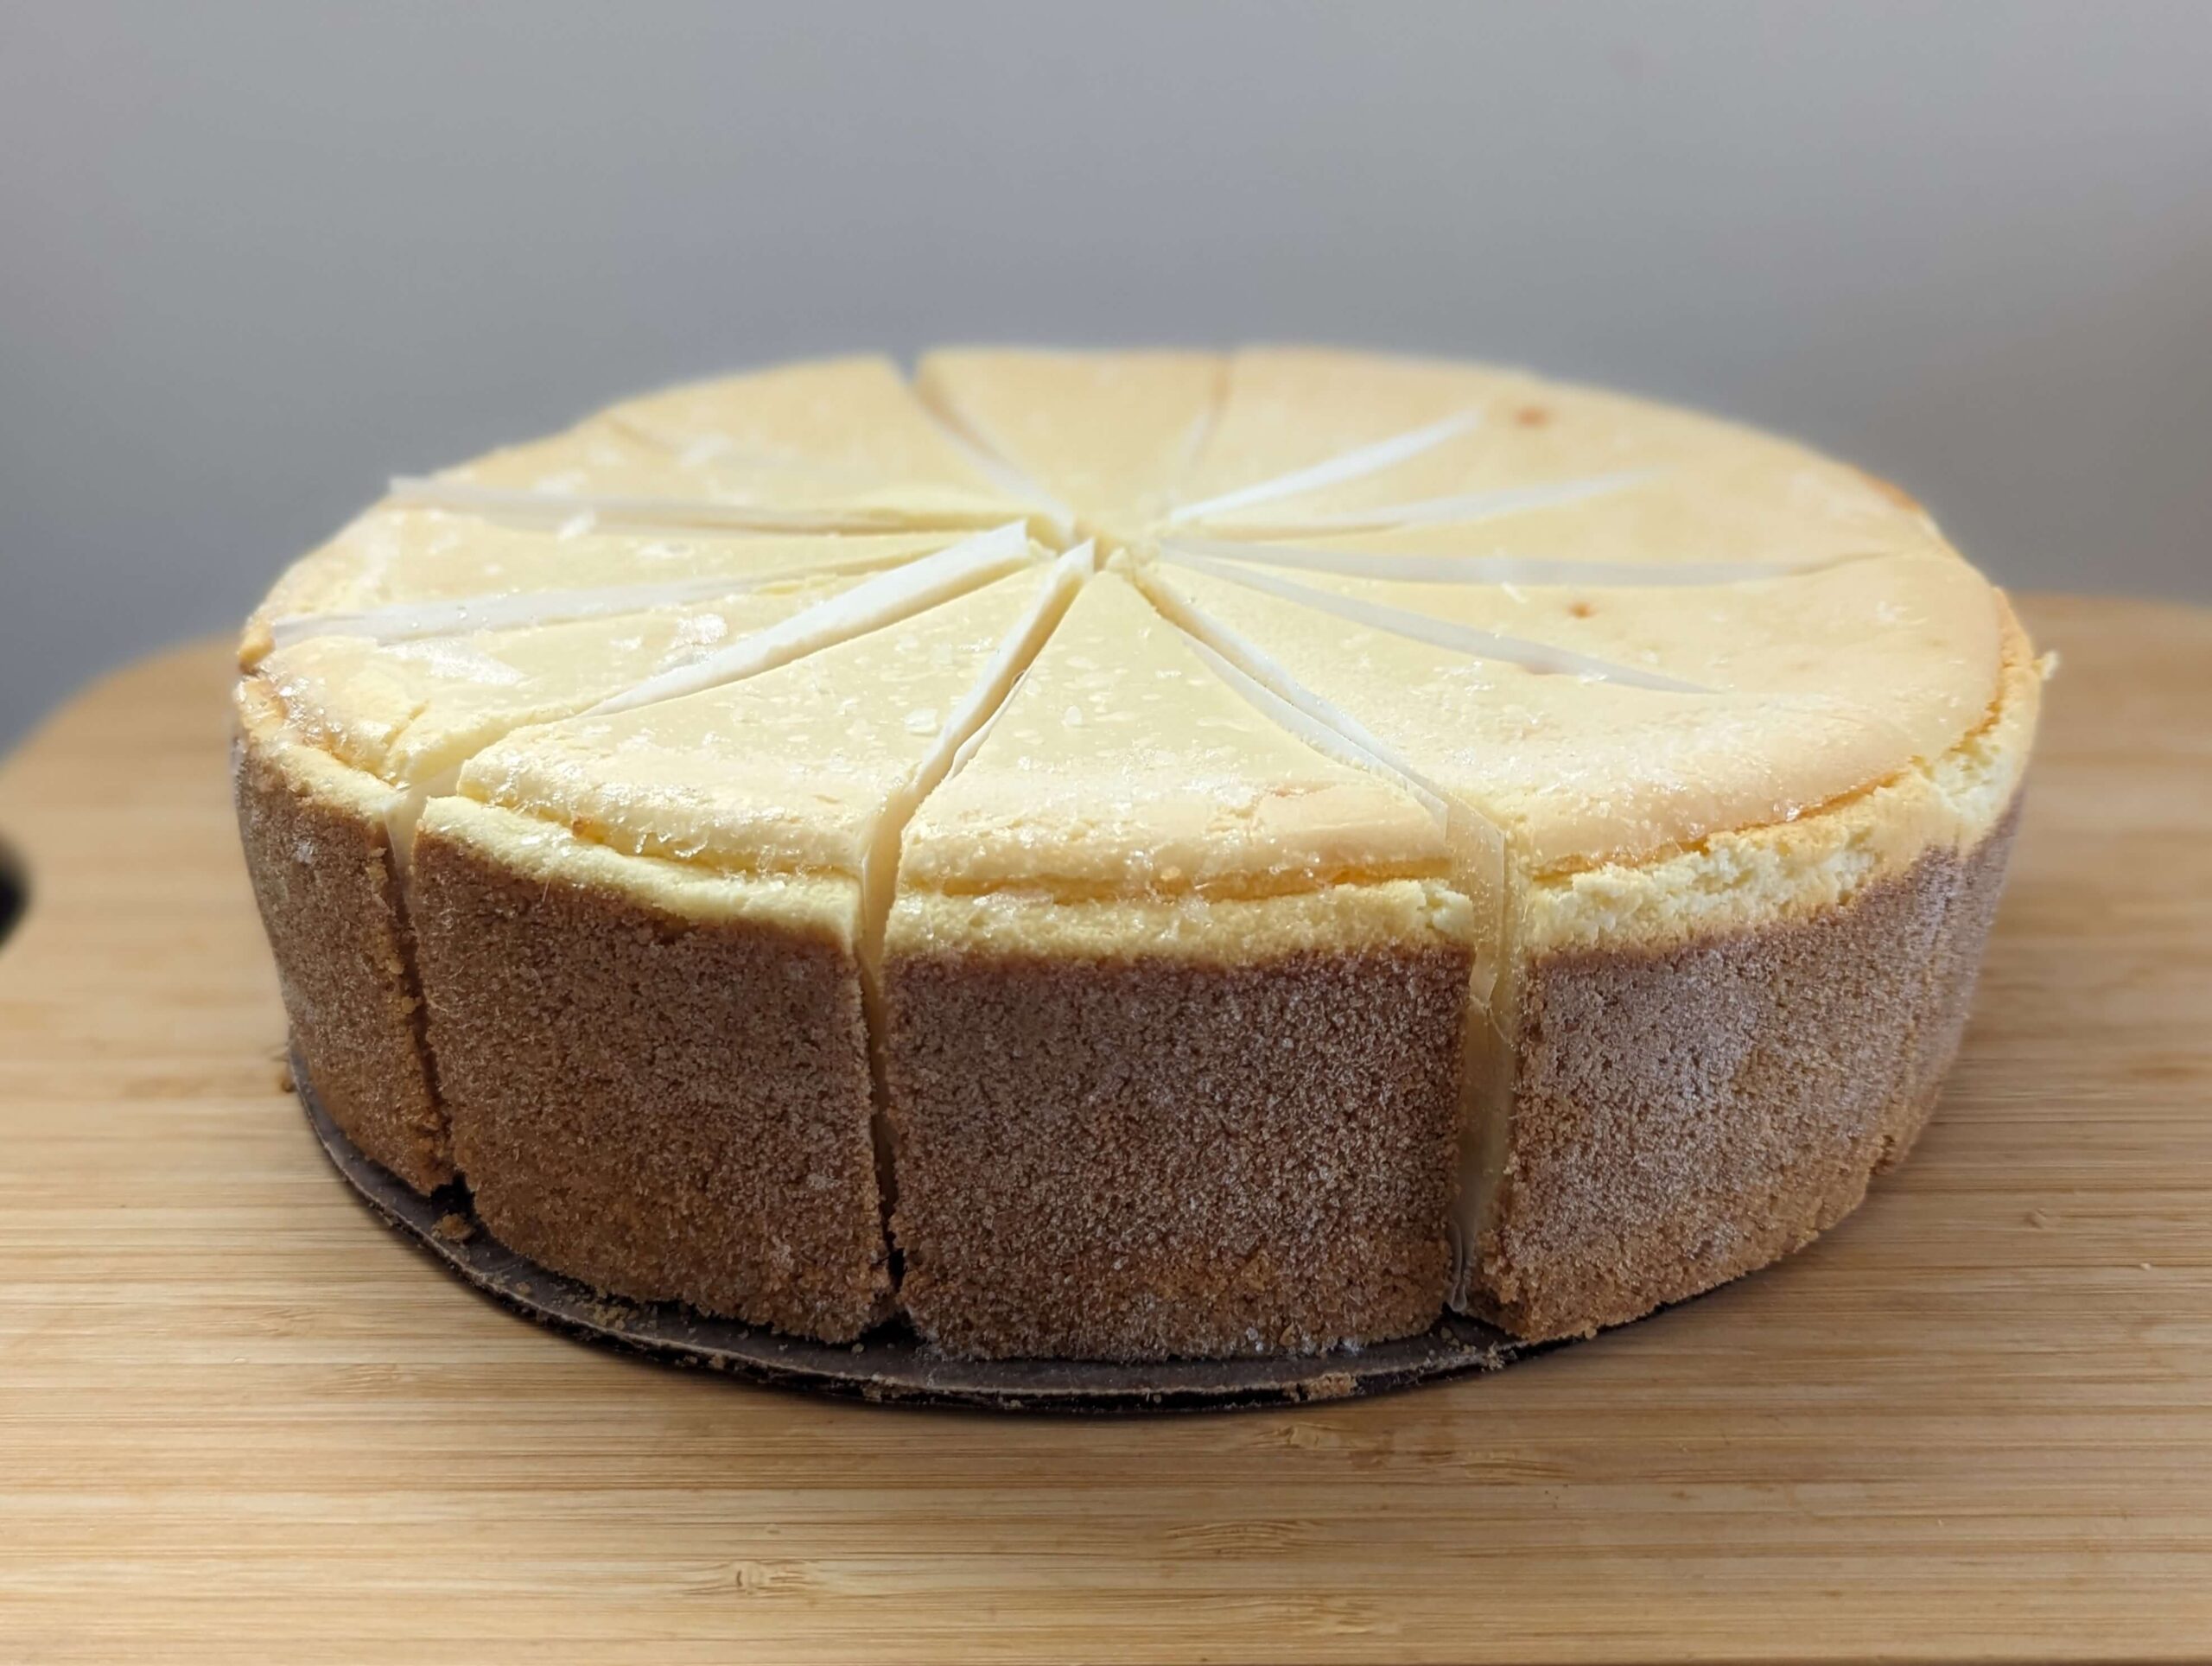 コストコ(COSTCO)のTHE CHEESECAKE FACTORY オリジナルチーズケーキ (8)